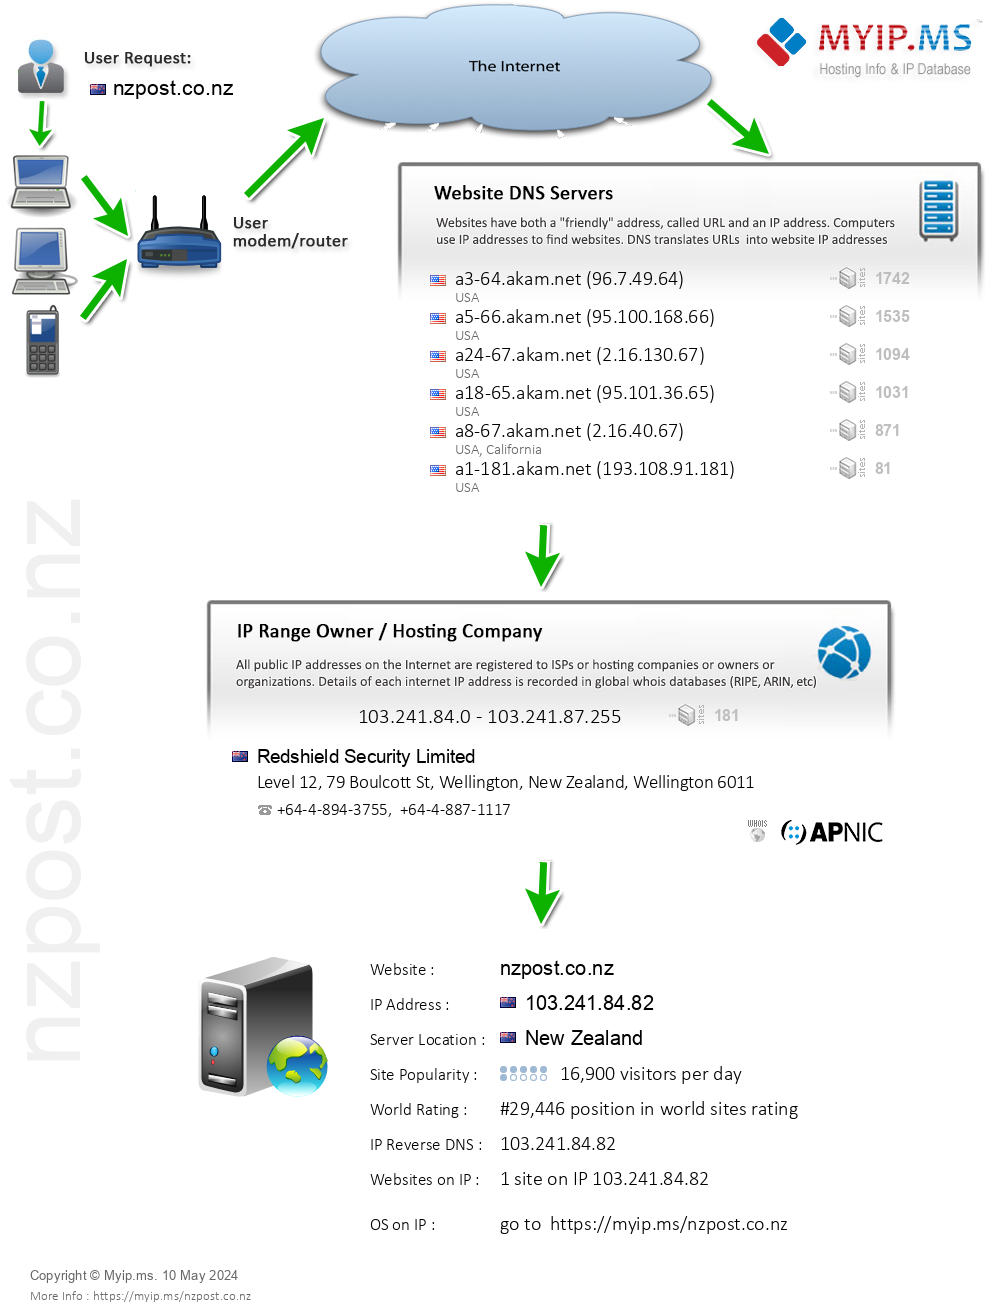 Nzpost.co.nz - Website Hosting Visual IP Diagram